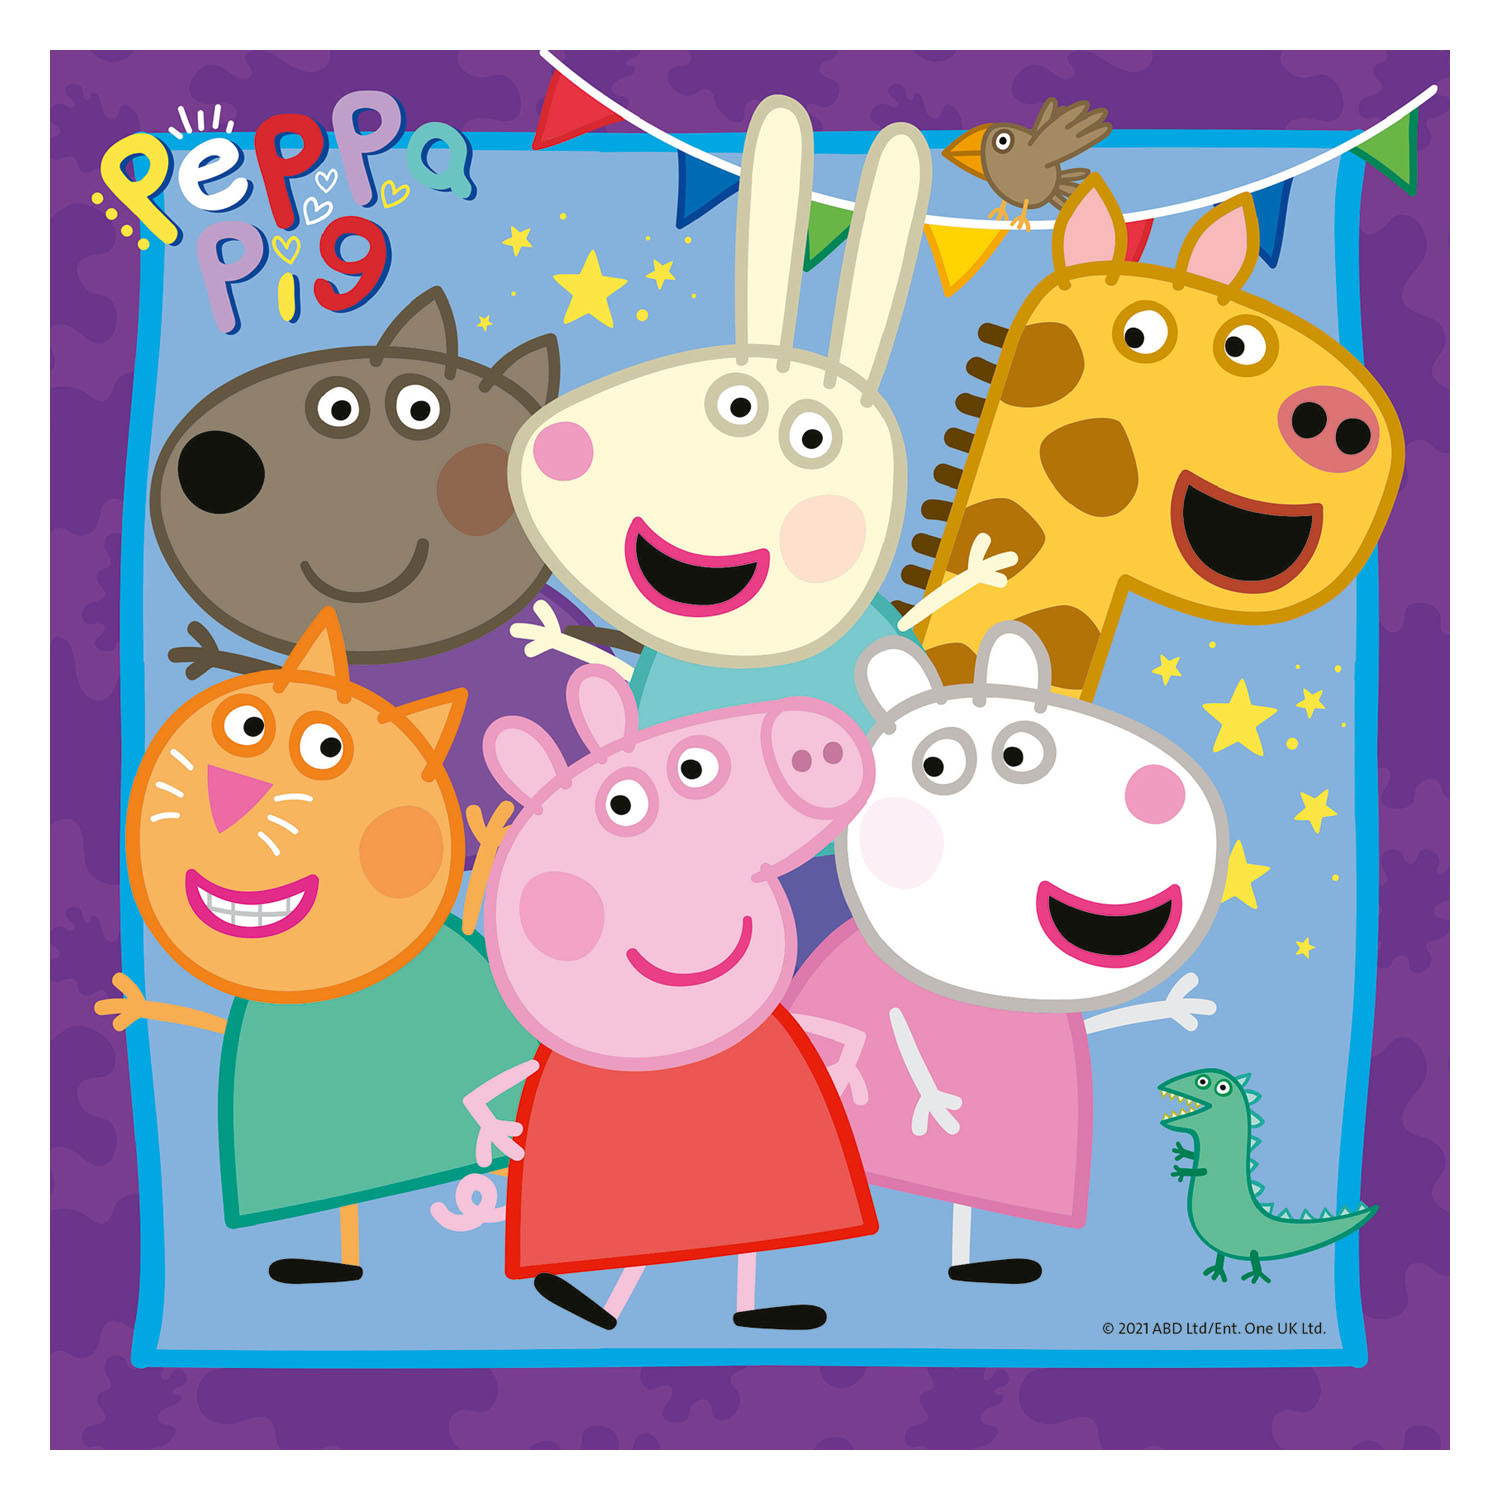 Puzzle famille et amis de Peppa Pig , 3 x 49 pièces.